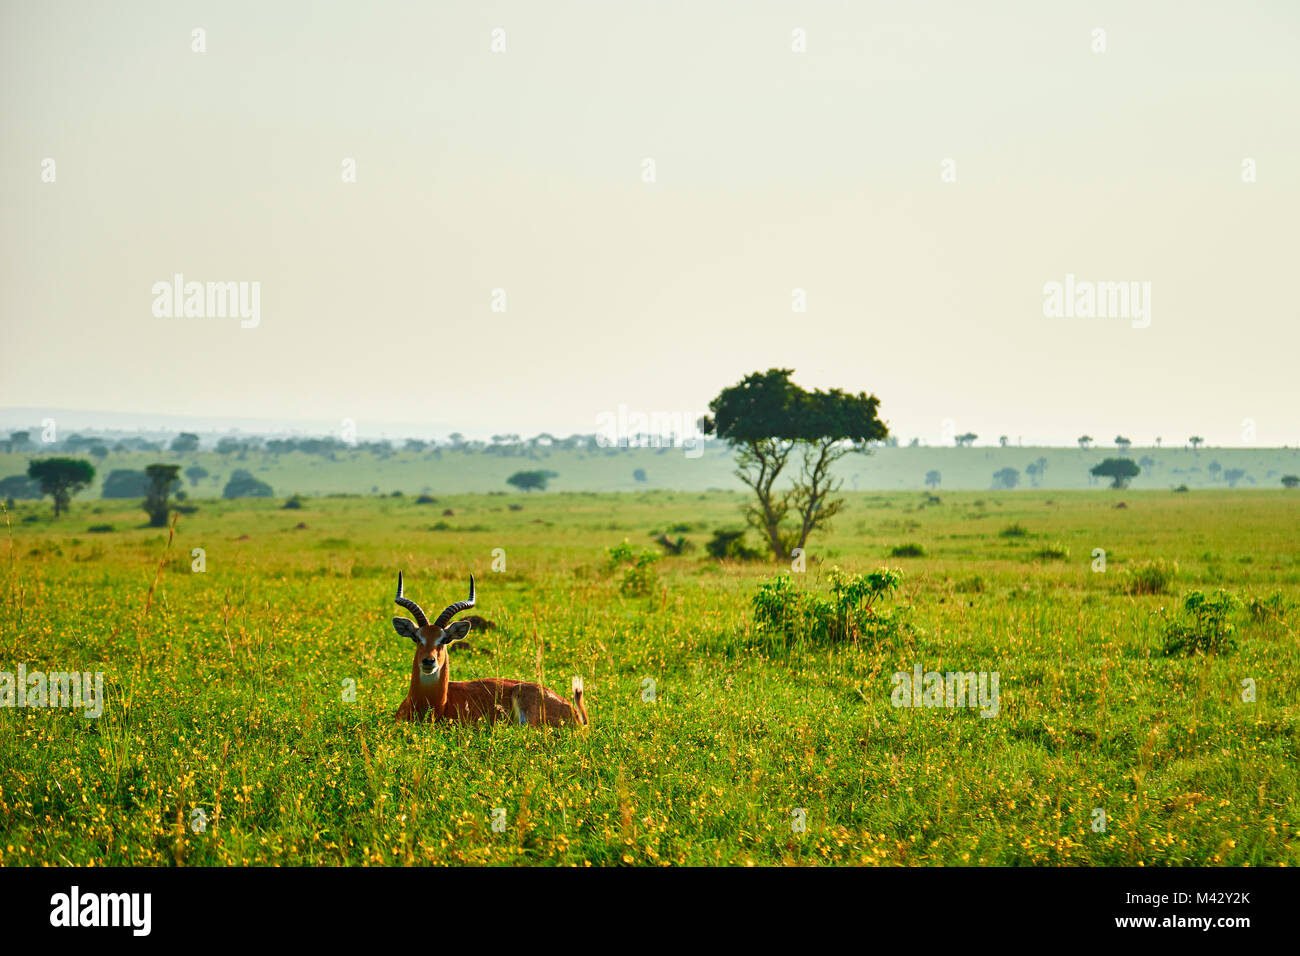 Paysage africain avec gazelle, Parc national Queen Elizabeth, Kasese, Rwenzururu sous-région, l'ouest de l'Ouganda, l'Ouganda, l'Afrique Banque D'Images